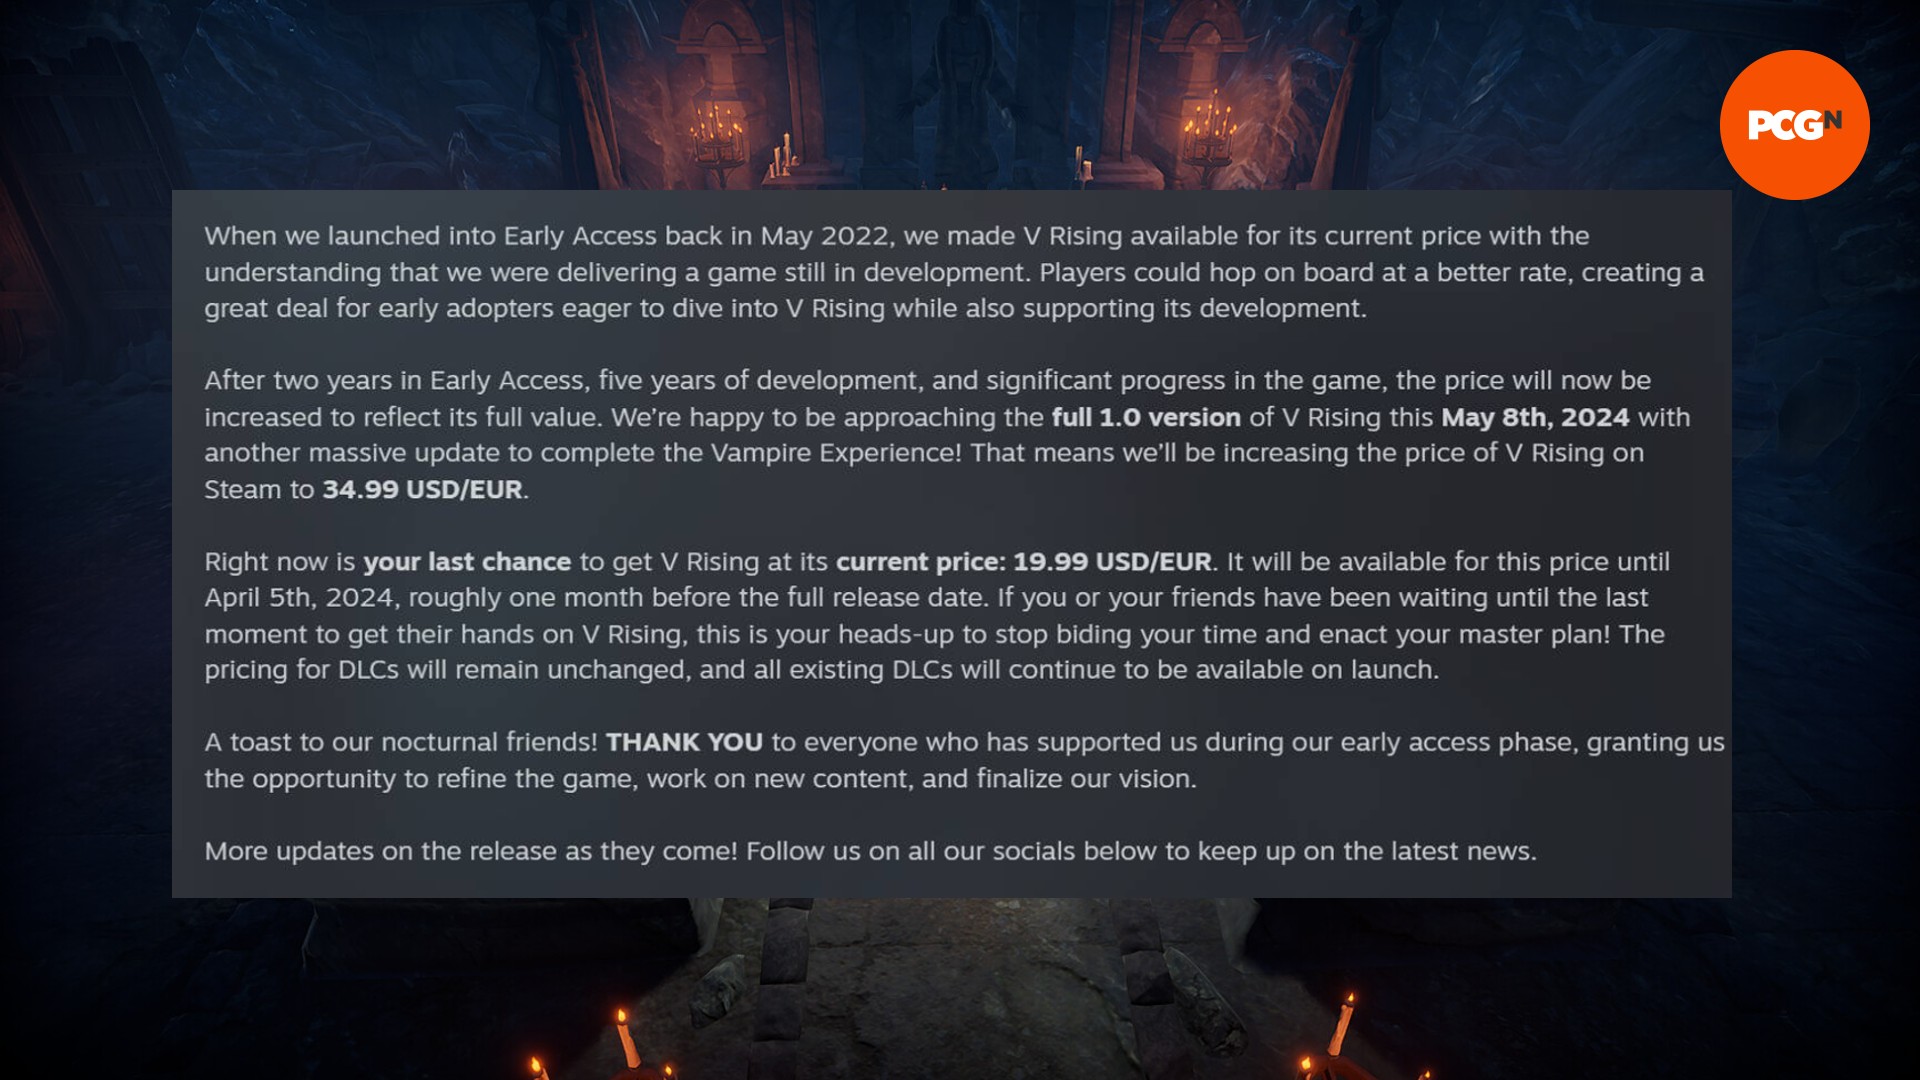 Příspěvek na blogu Steam od studia V Rising Stunlock, který diskutuje o zvýšení ceny za plné spuštění